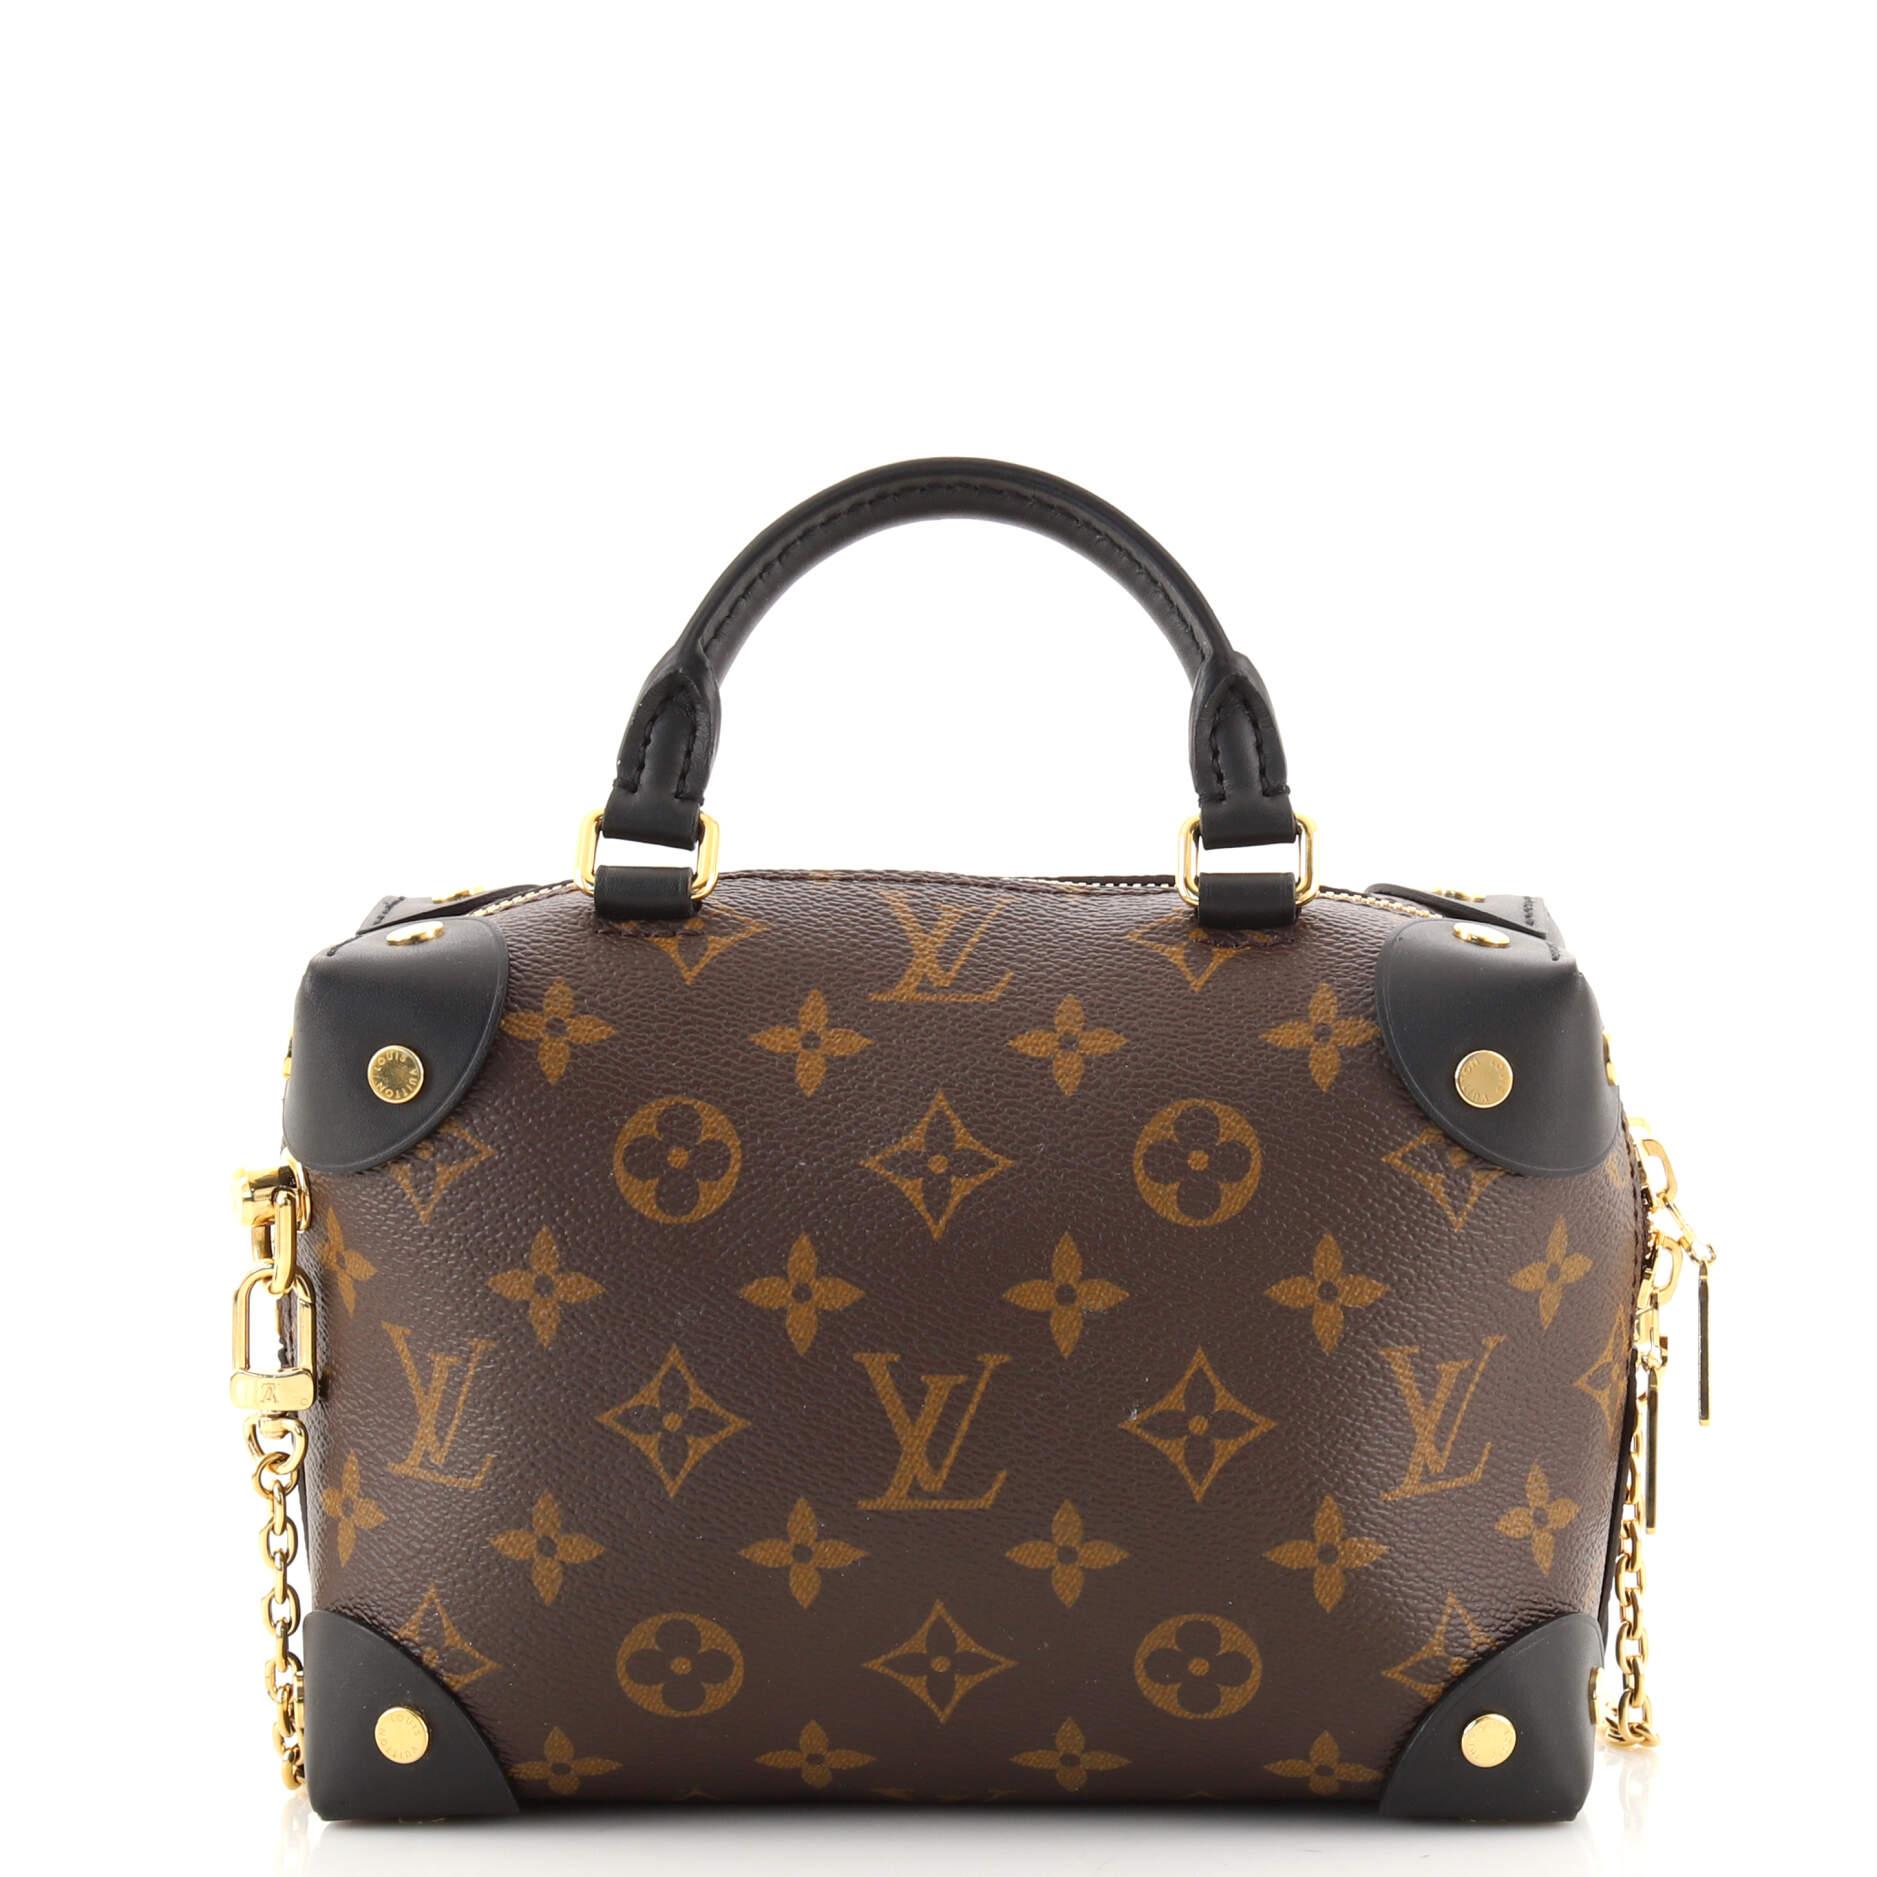 Women's or Men's Louis Vuitton Petite Malle Souple Handbag Monogram Canvas